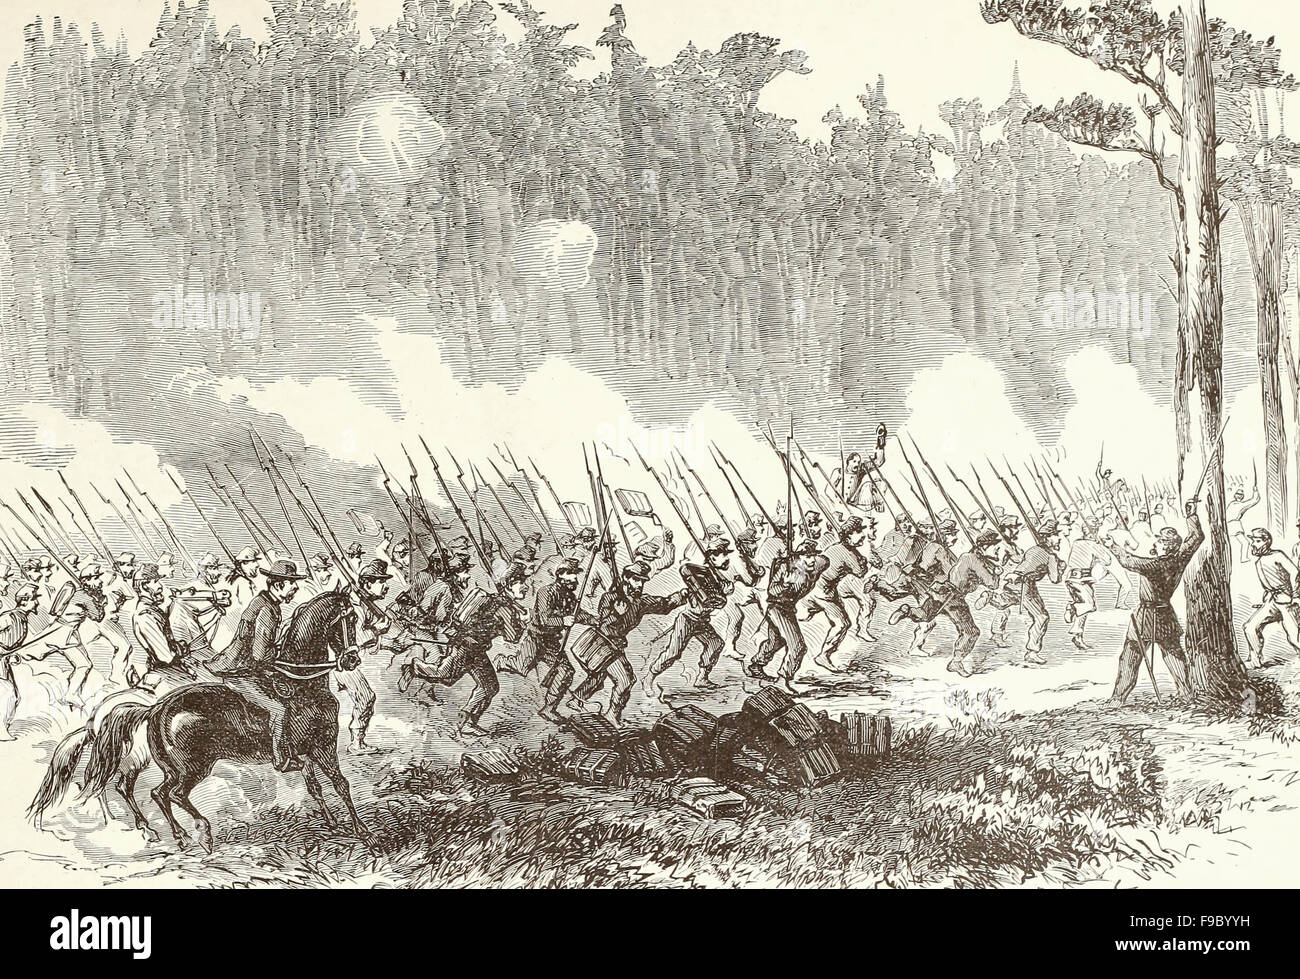 Schlacht von Charles City Road - Gebühr von Jersey Brigade - die erste New Jersey-Brigade, General Taylor, Detatching sich von General Slocum Division und rauschenden zur Unterstützung der allgemeinen Kearny Division, die zurück, so drehen die Geschicke des Tages, 30. Juni 1862 vertrieben worden waren. 18:00 USA Bürgerkrieg Stockfoto